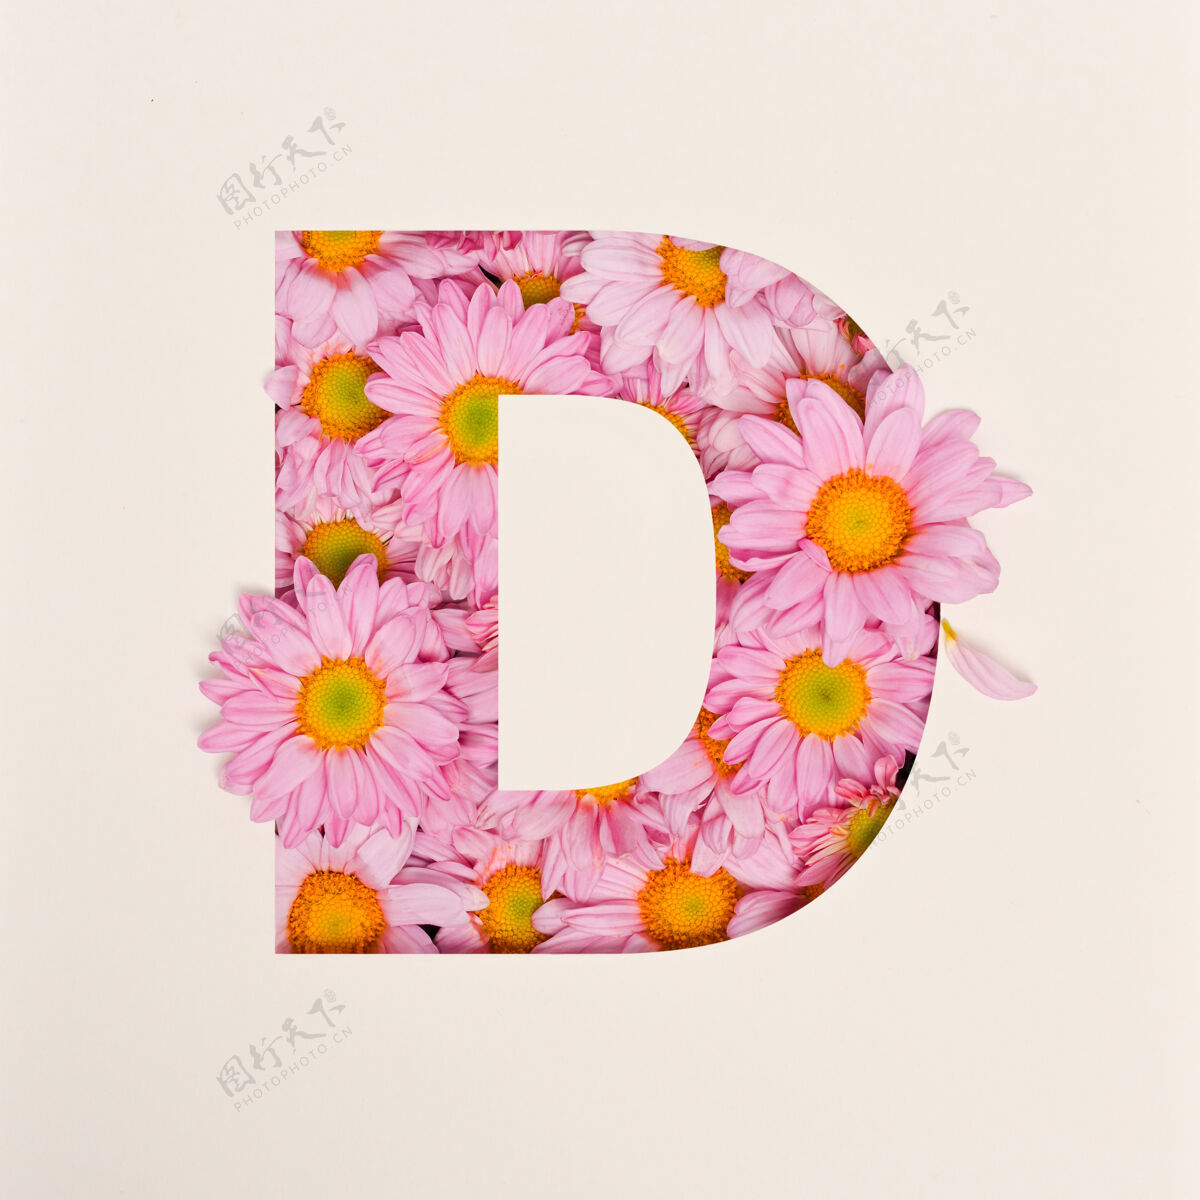 抽象字体设计 抽象字母字体与粉红色的花 现实的花卉排版-d字体排版花